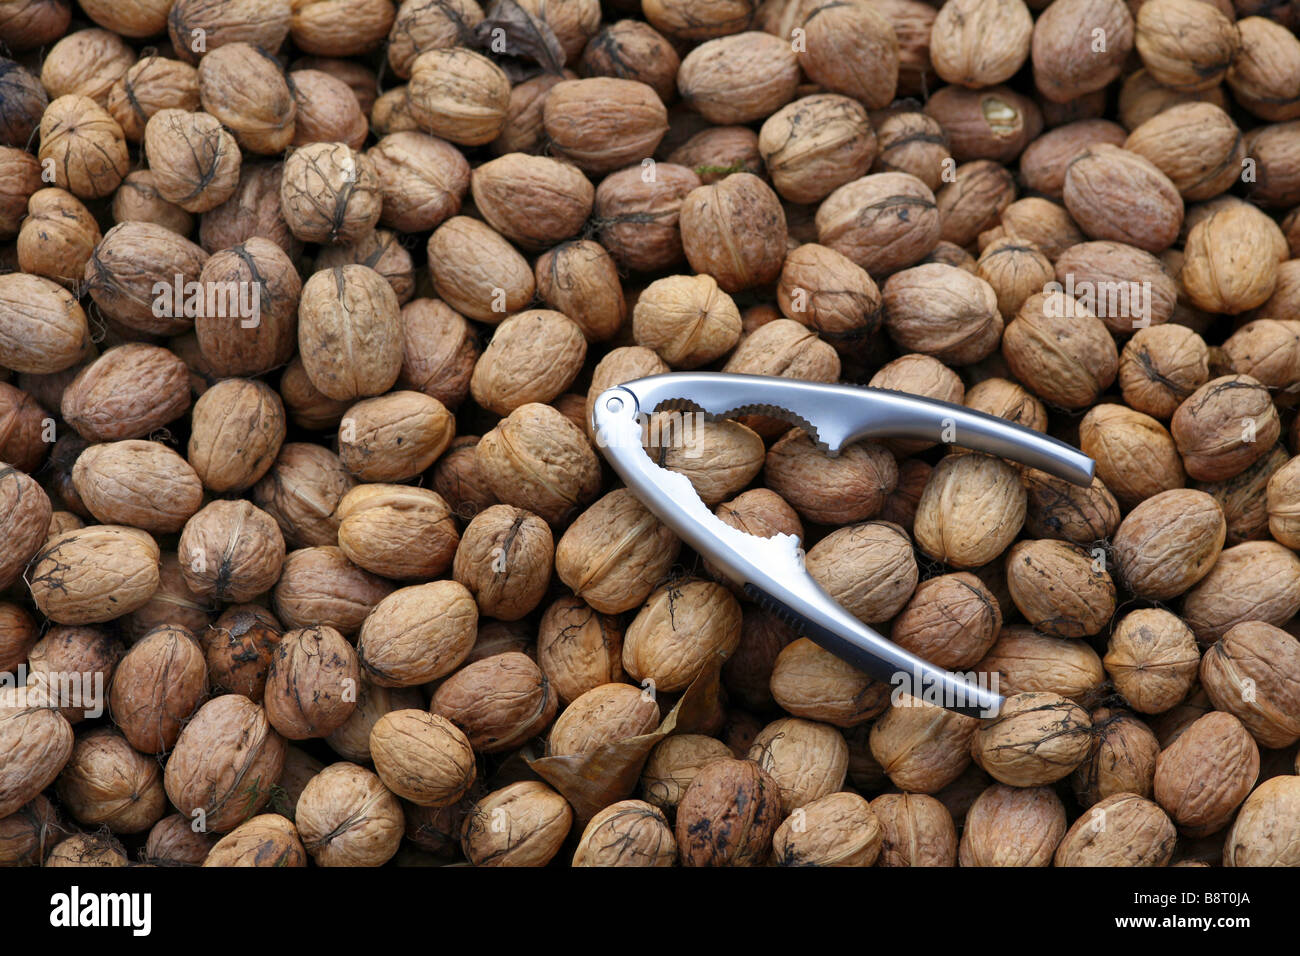 walnut (Juglans regia), walnuts with nutcracker Stock Photo